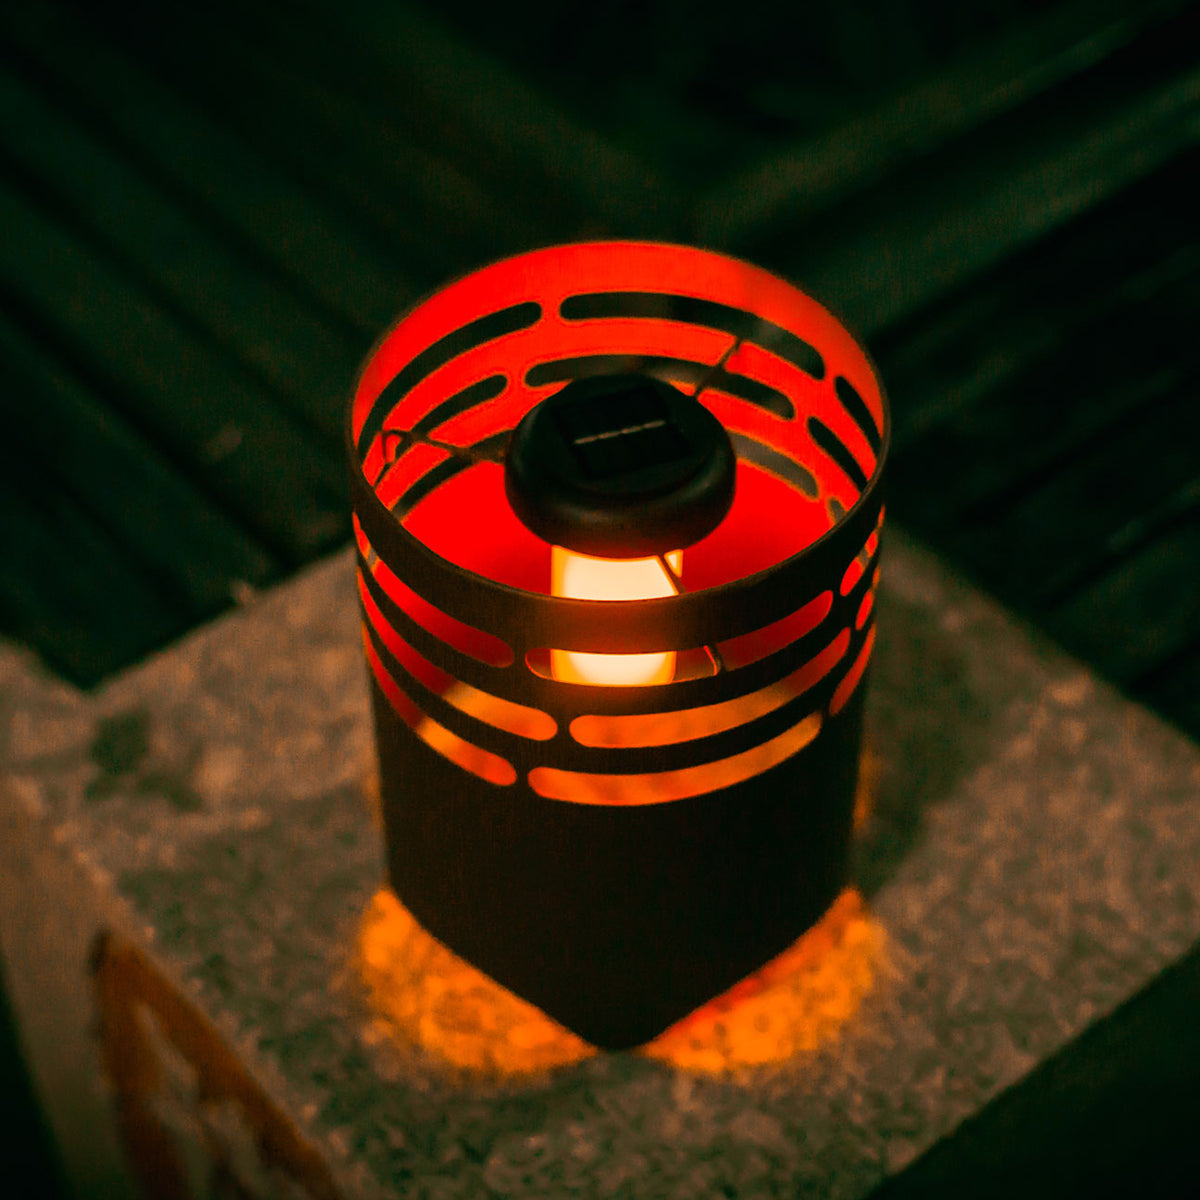 LED Solar Feuerkorb mit Flammeneffekt in Rost-Optik Stimmungslicht Garten